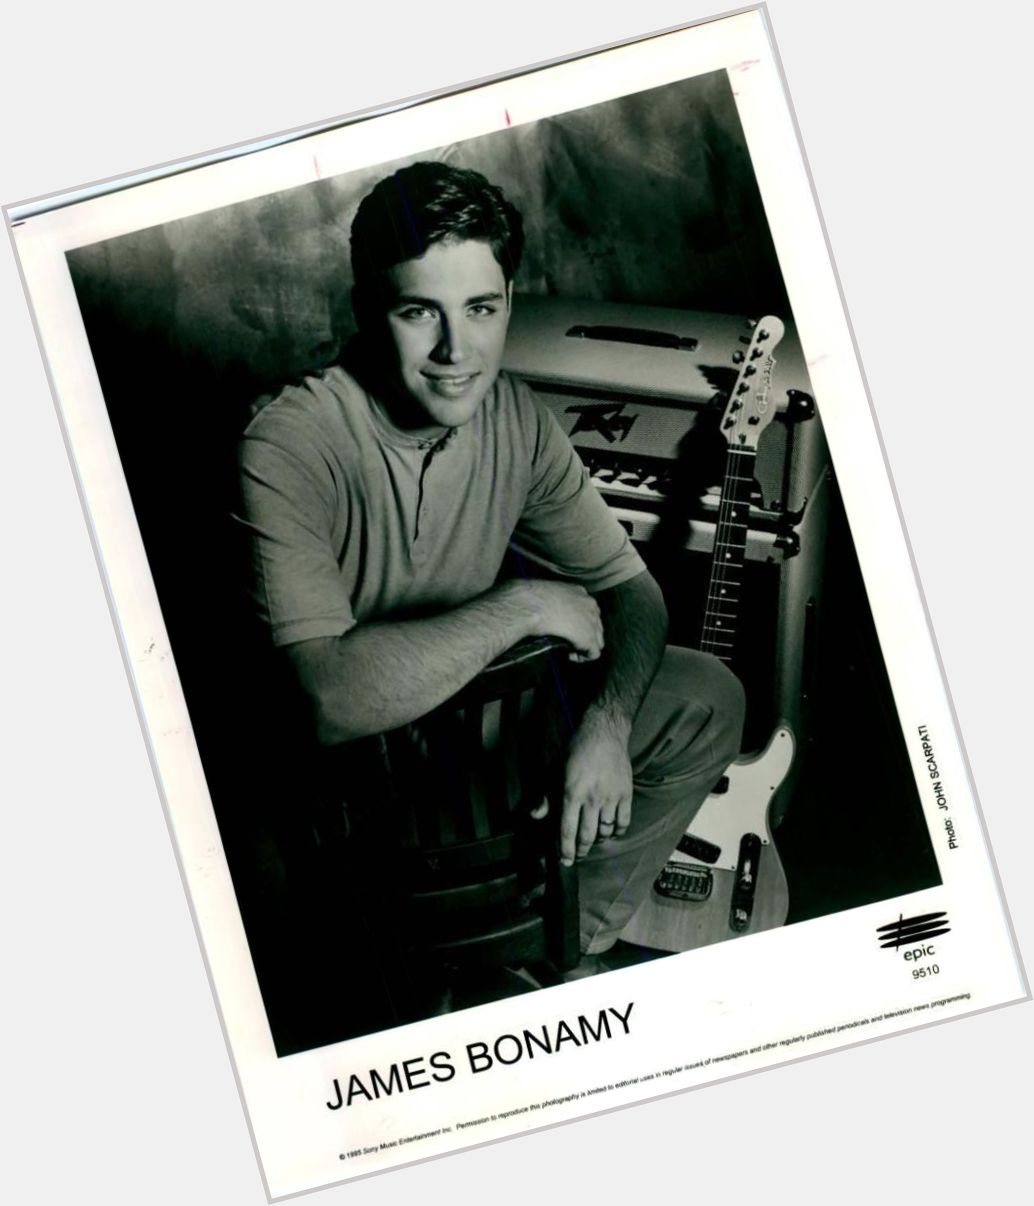 Https://fanpagepress.net/m/J/James Bonamy Exclusive Hot Pic 2